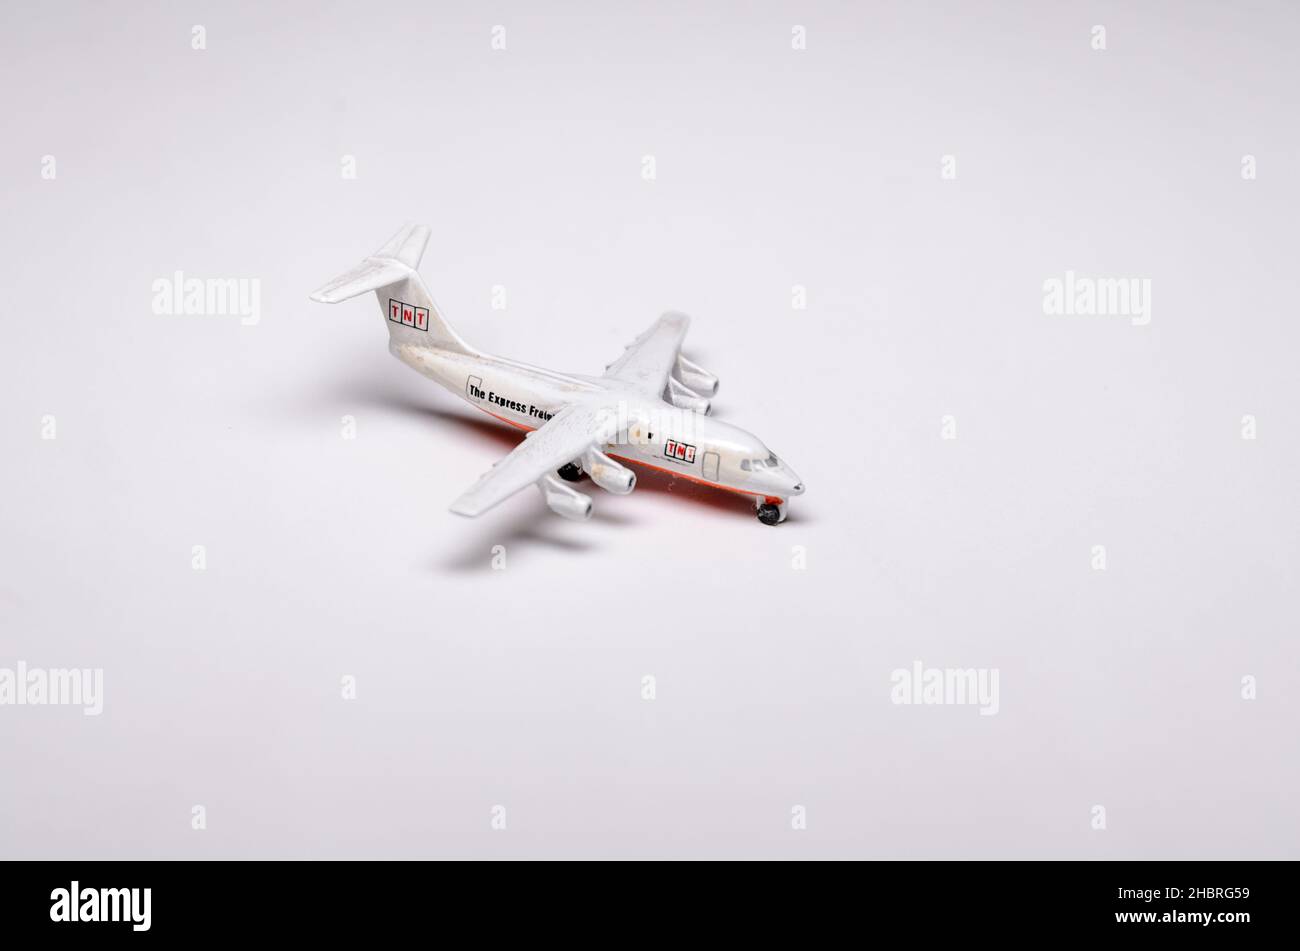 Modello del British Aerospace 146 (Bae-146) con livrea TNT Air Cargo, vista ravvicinata su sfondo bianco Foto Stock